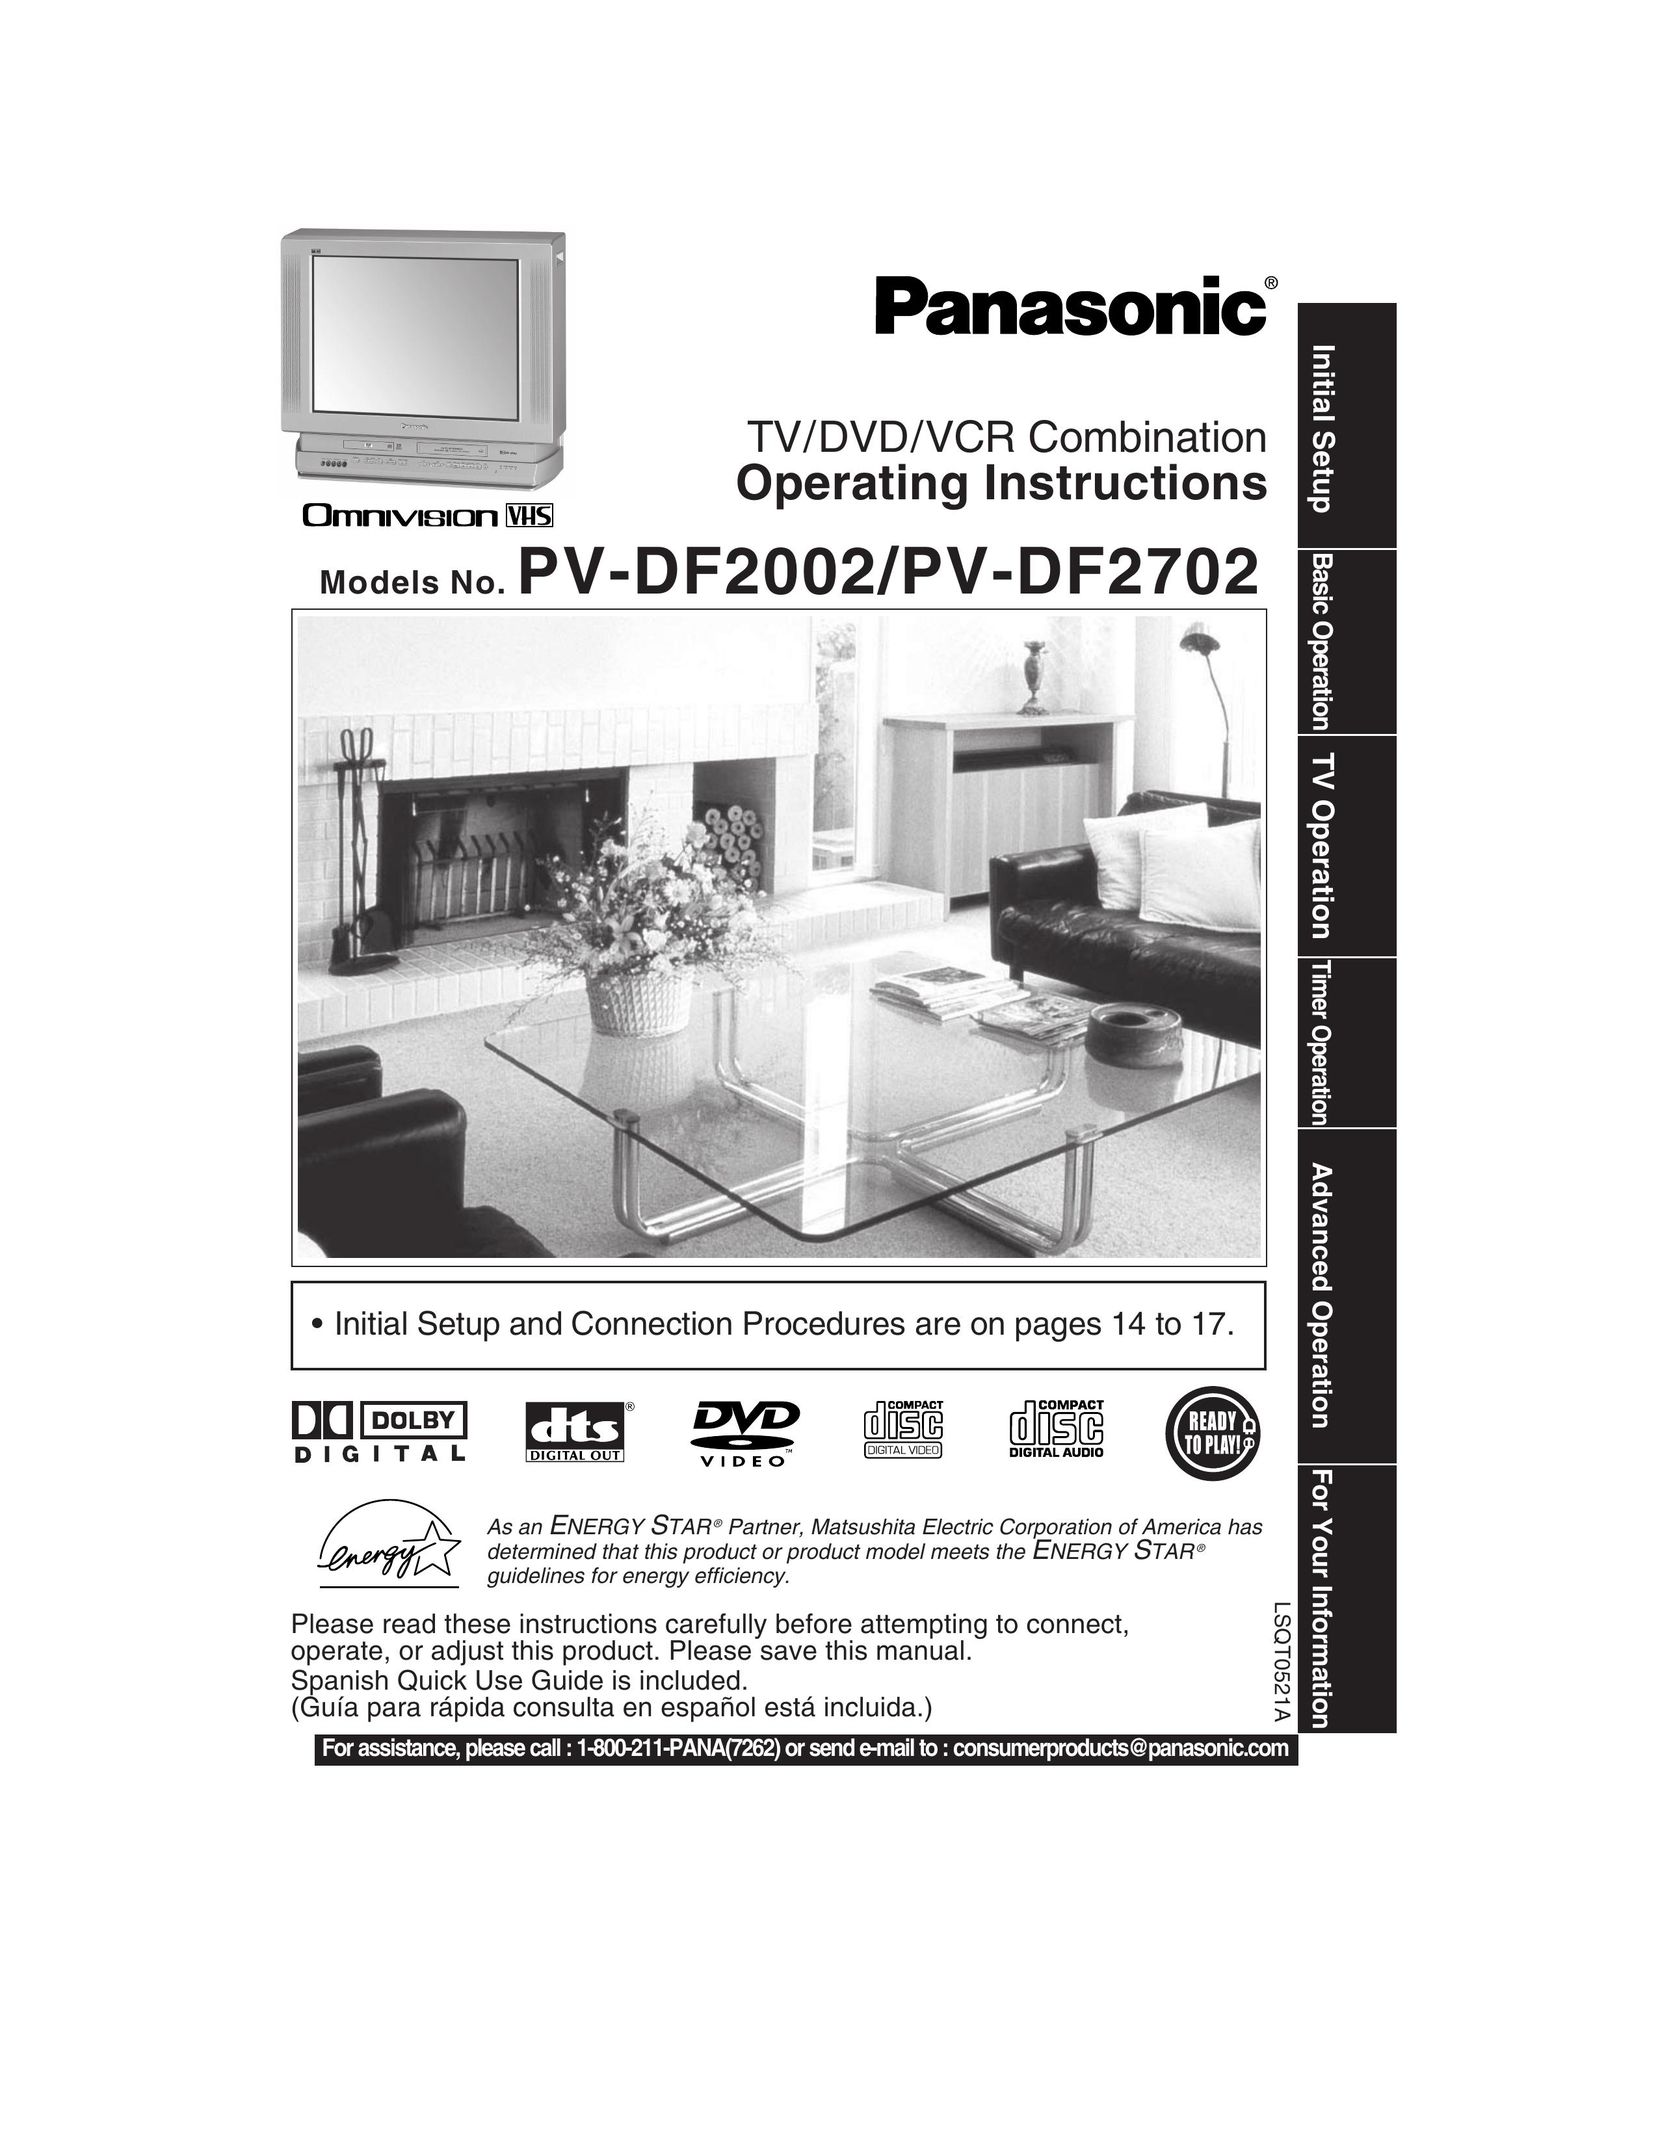 Panasonic PV-DF2002 TV VCR Combo User Manual